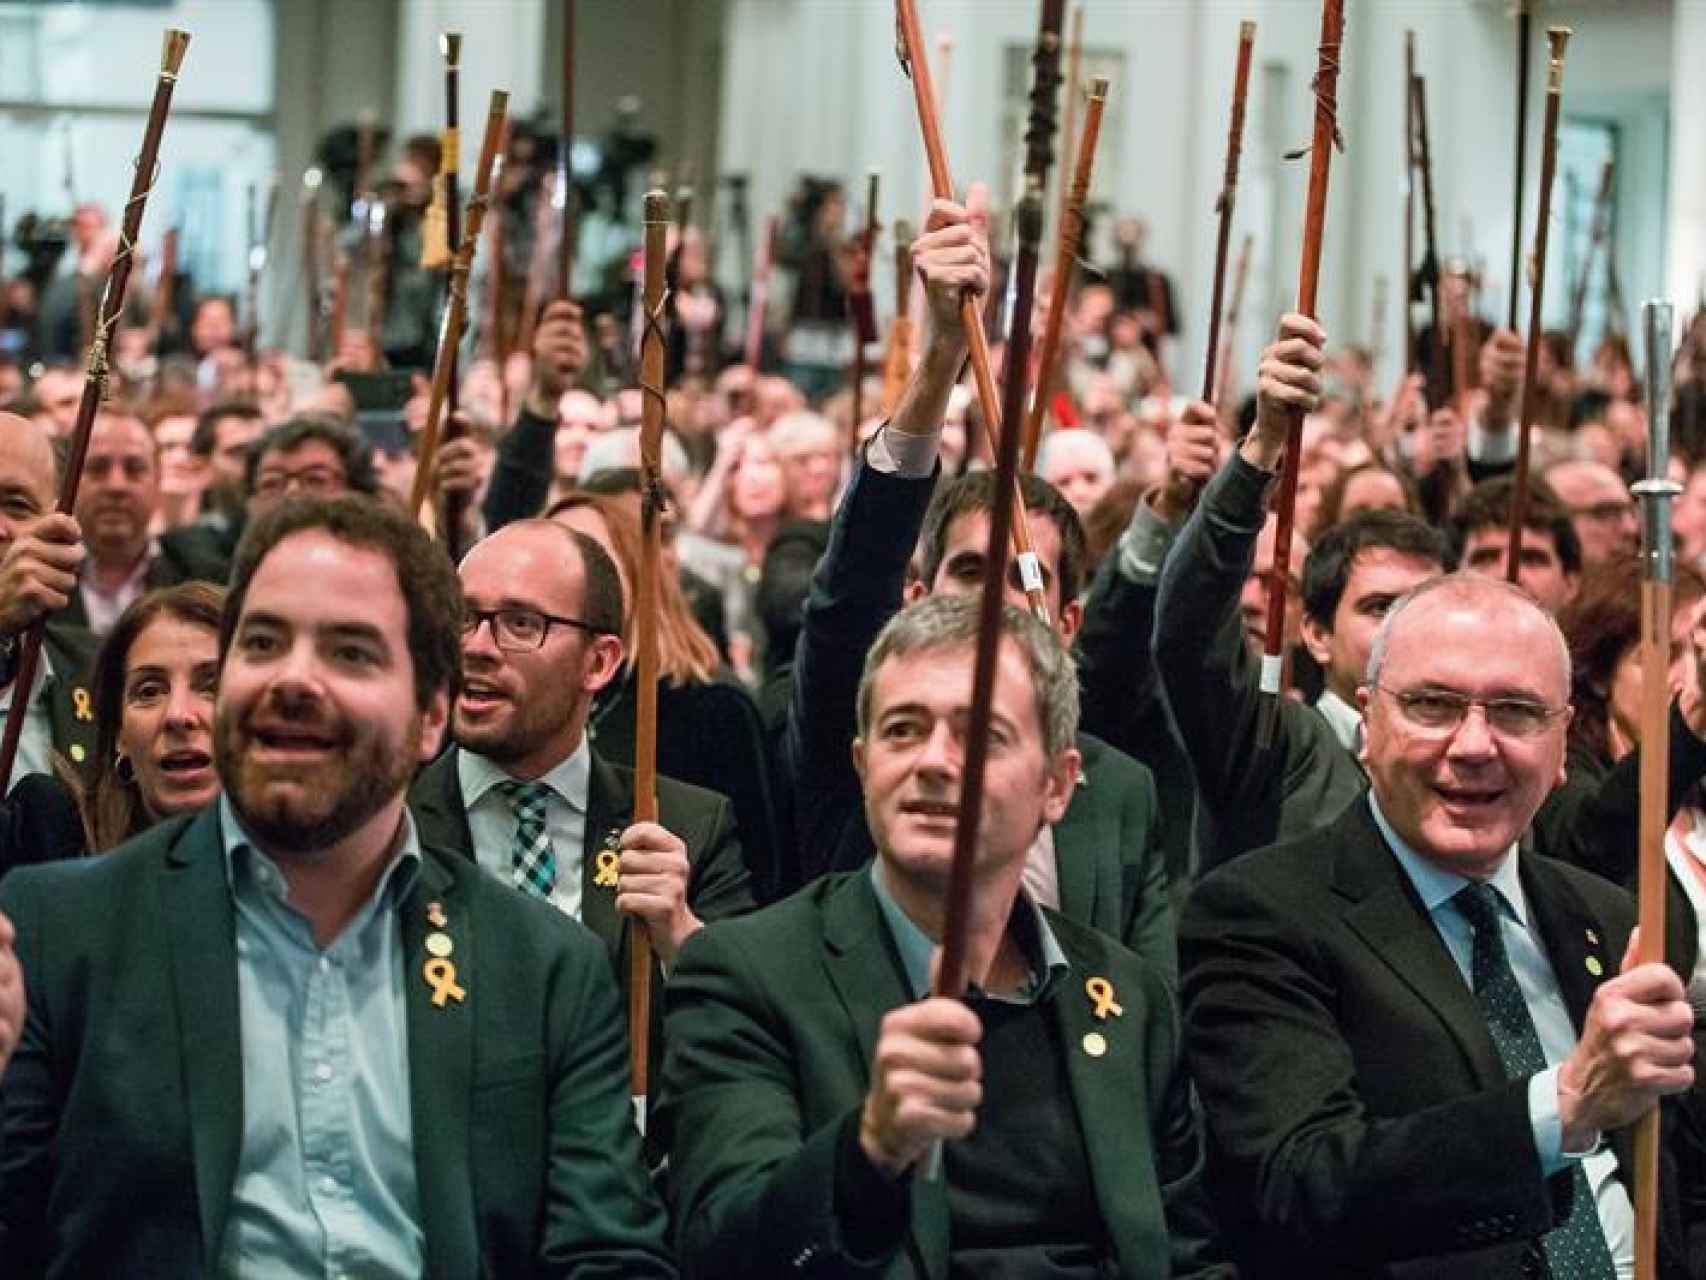 Doscientos alcaldes nacionalistas vitorean a Carles Puigdemont vara en mano.